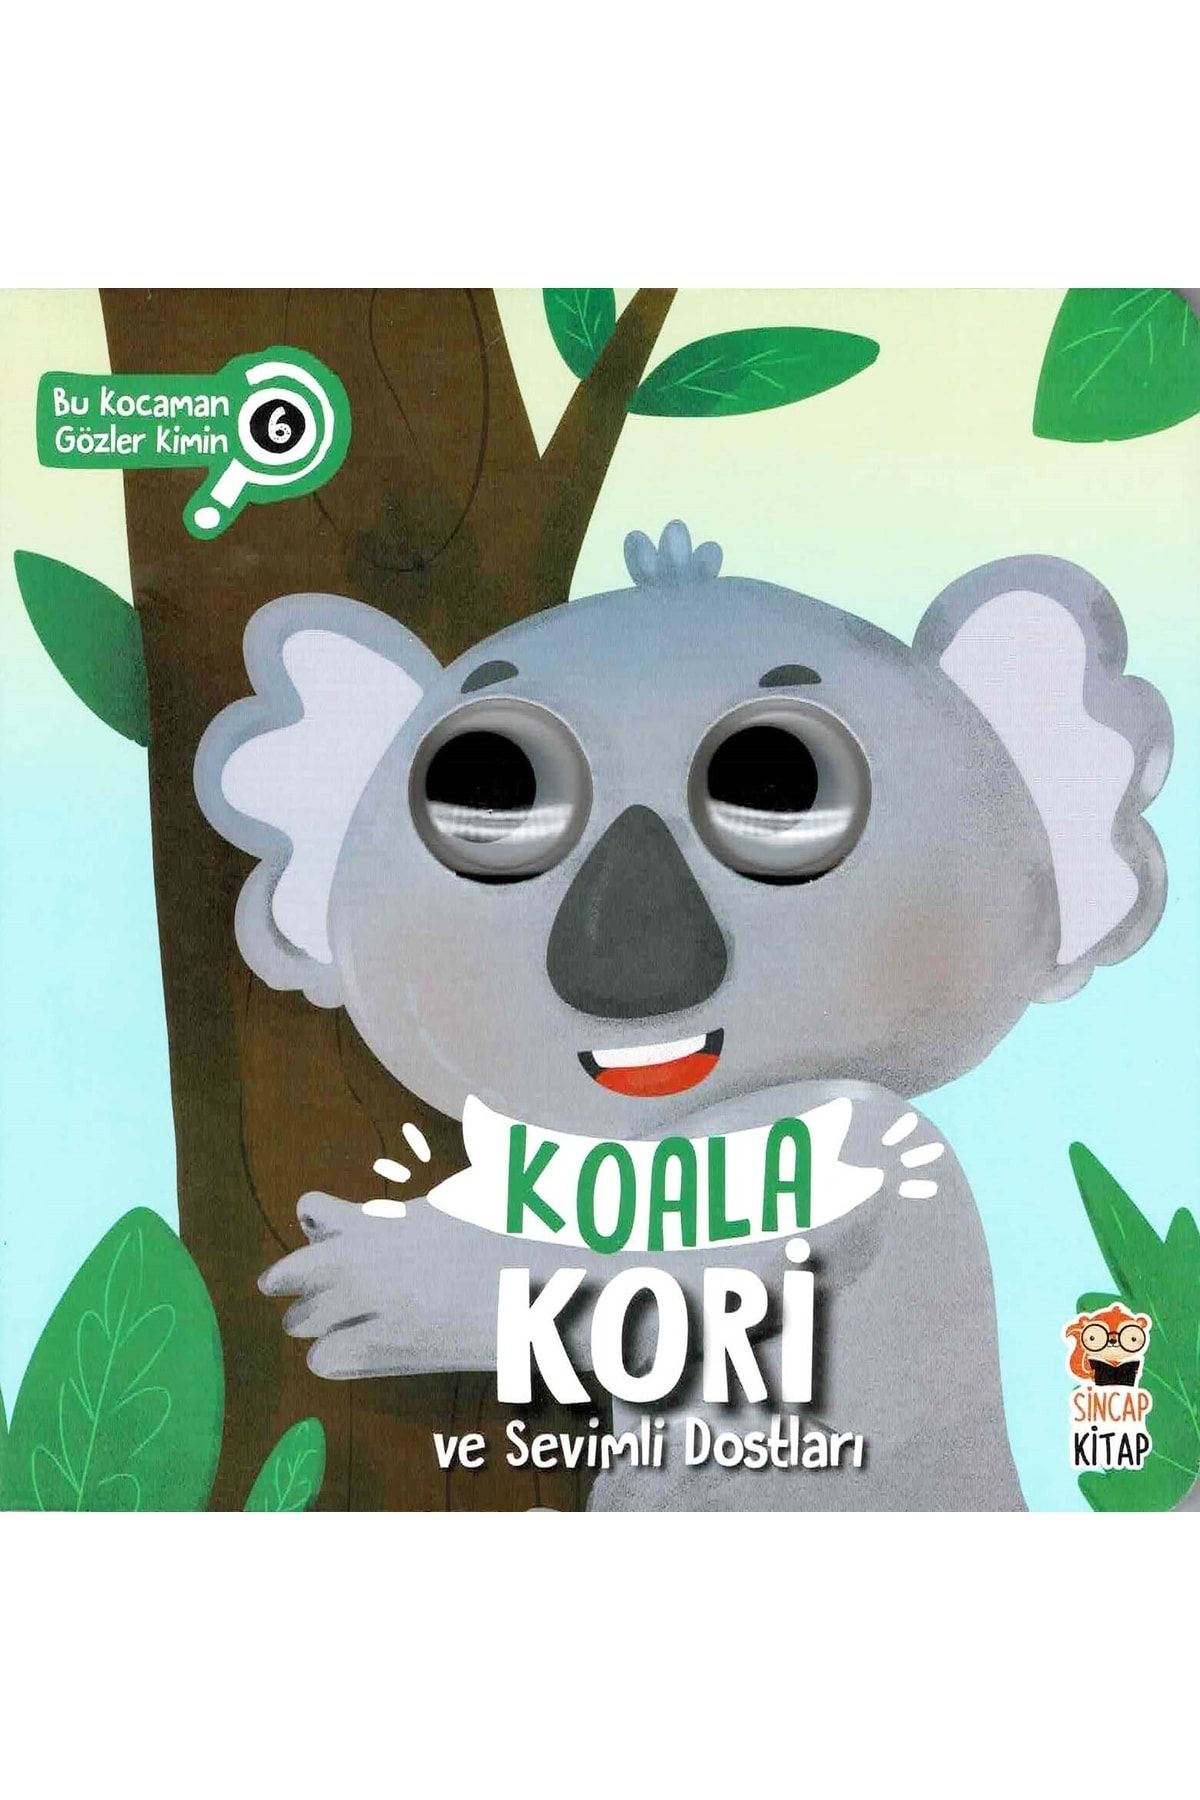 Sincap Kitap Bu Kocaman Gözler Kimin? - Koala Kori Ve Sevimli Dostları